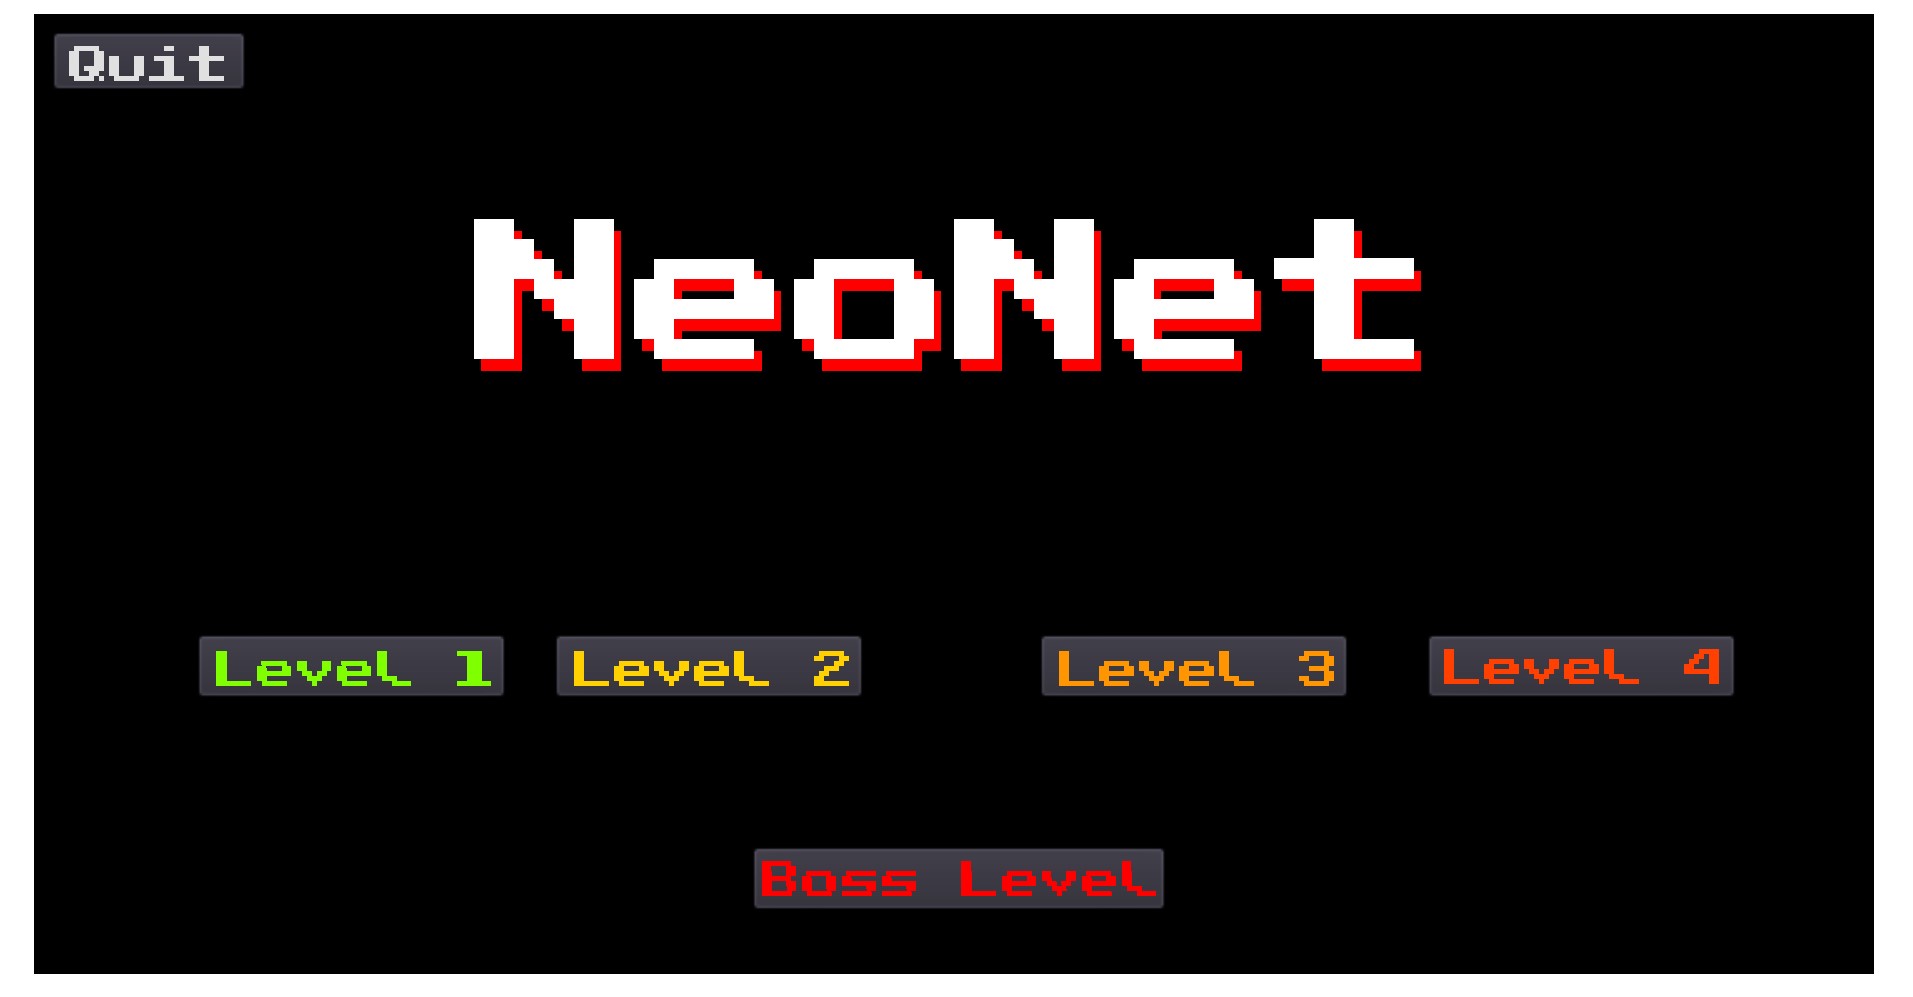 NeoNet